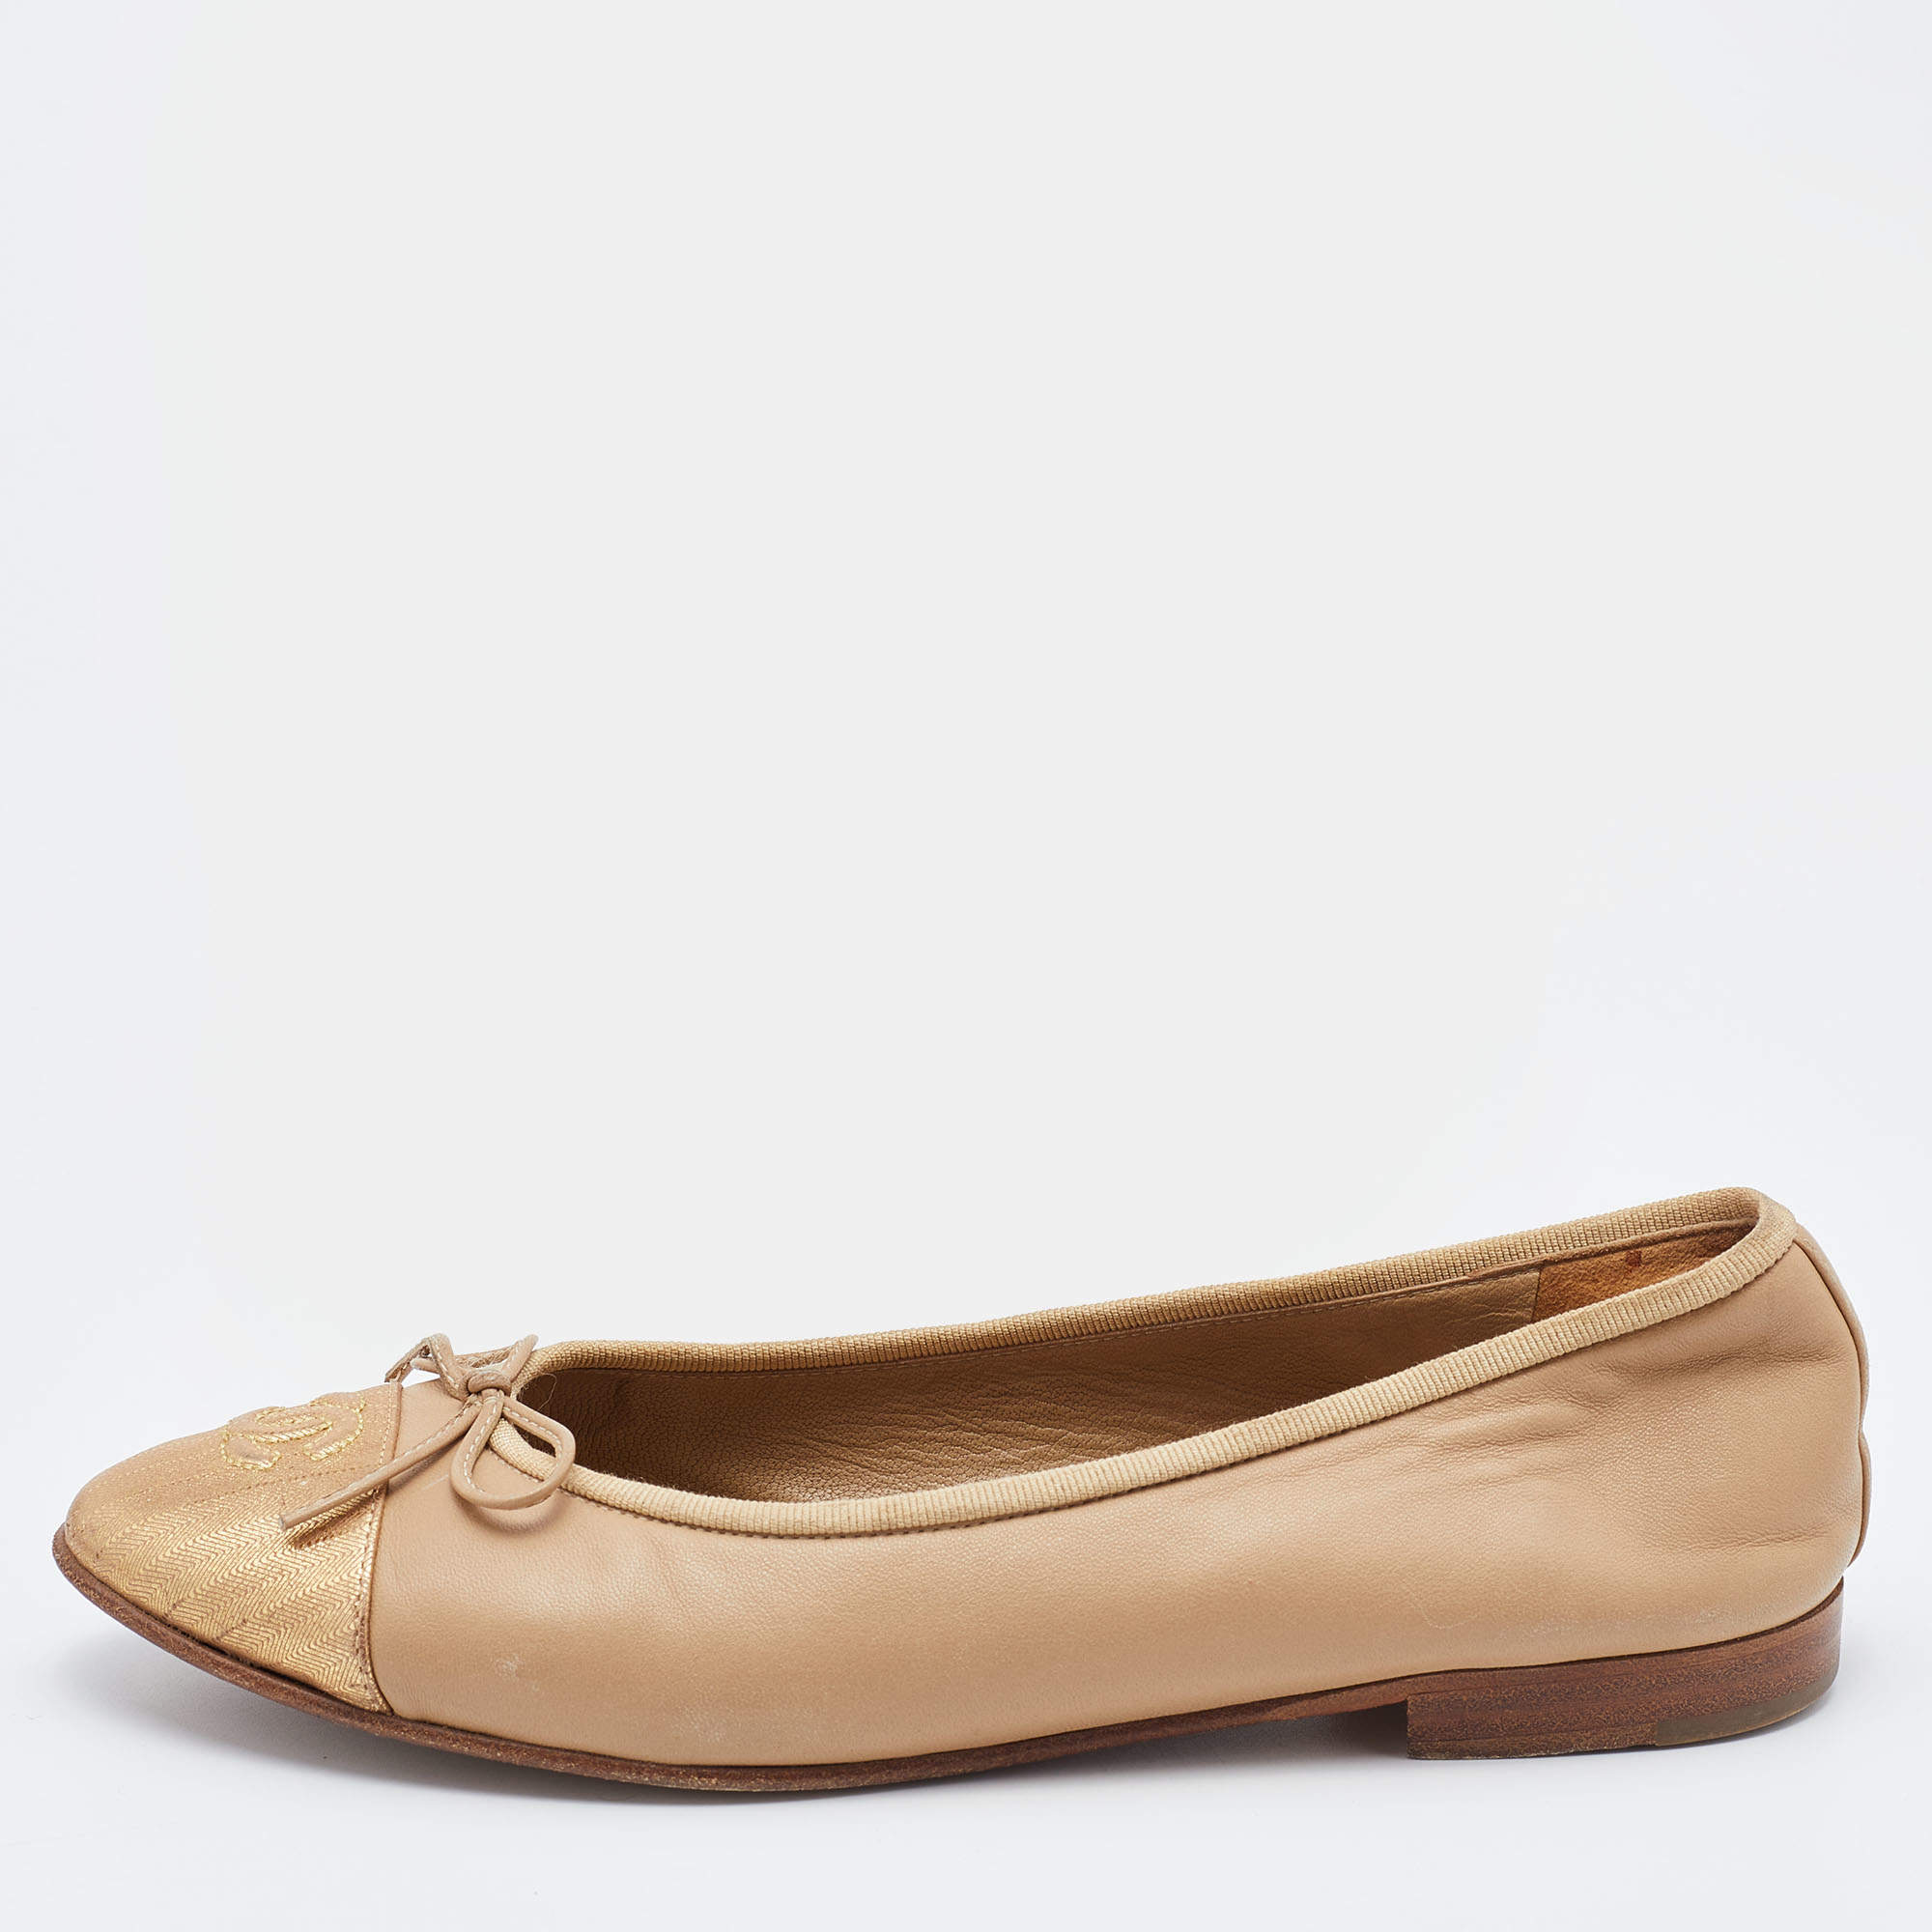 Chanel Beige Leather CC Cap Toe Ballet Flats Size 37.5